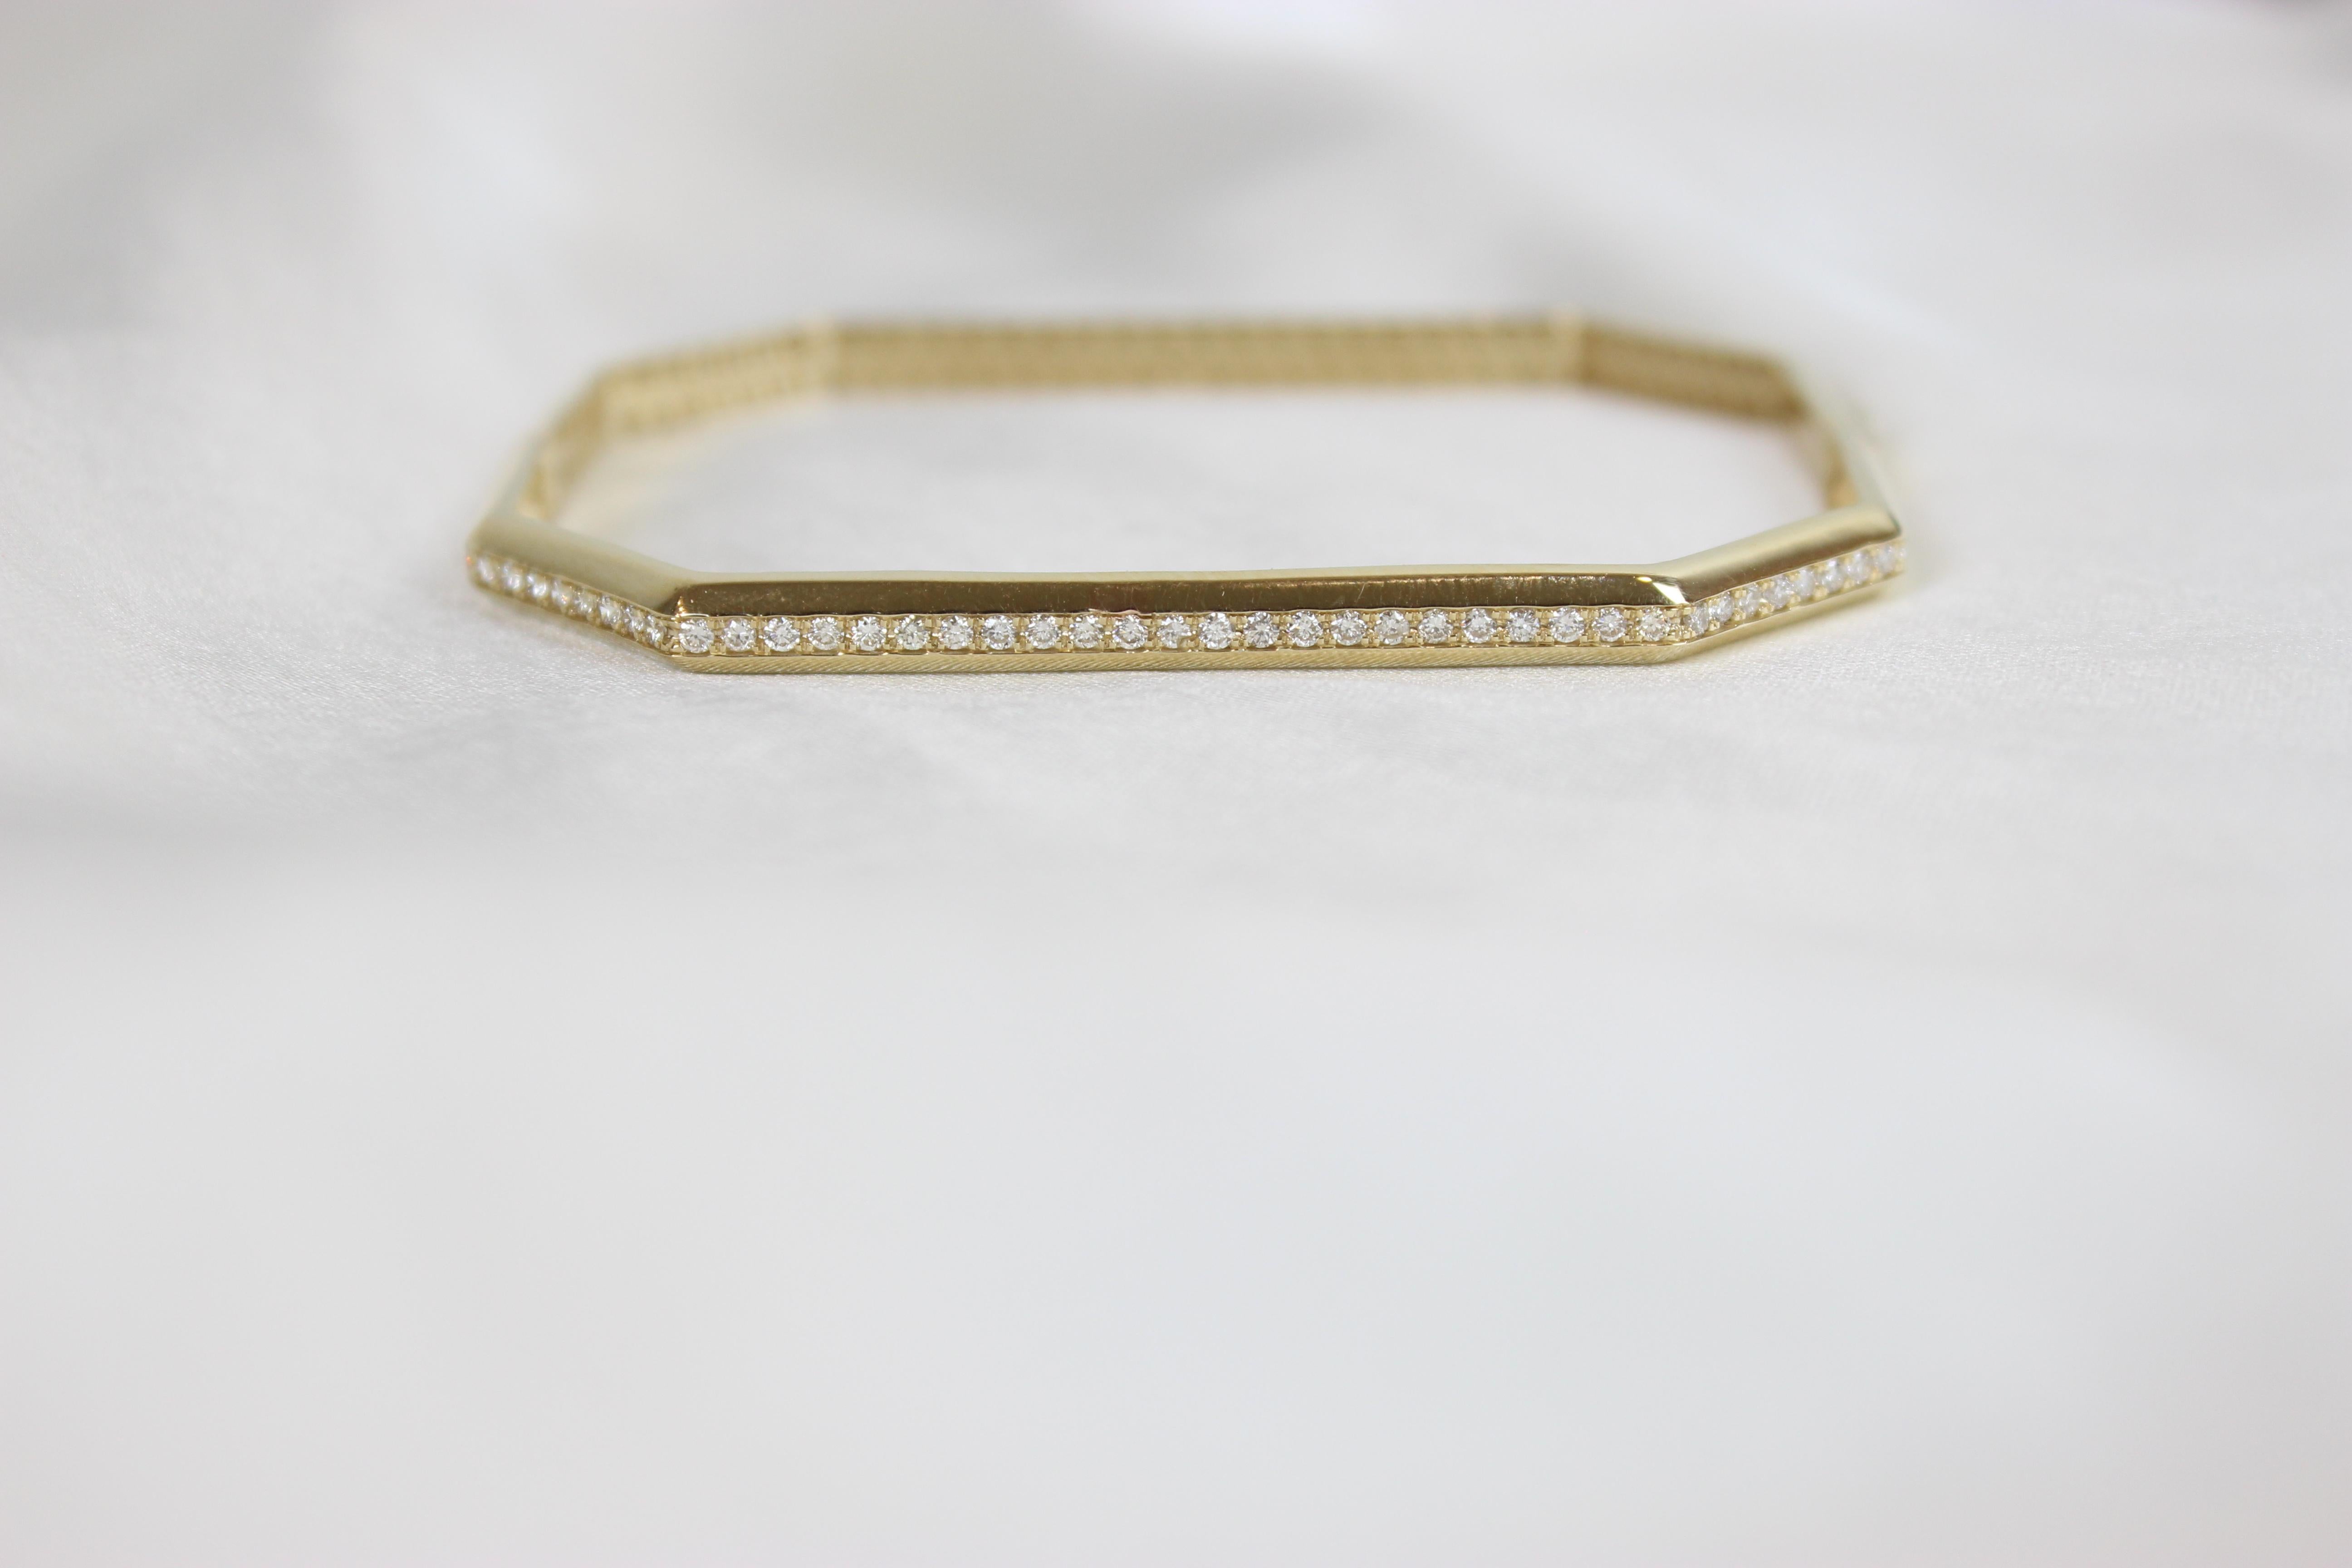 Octagonal Shape Bangle Bracelet Set in 18k Solid Gold For Sale 3